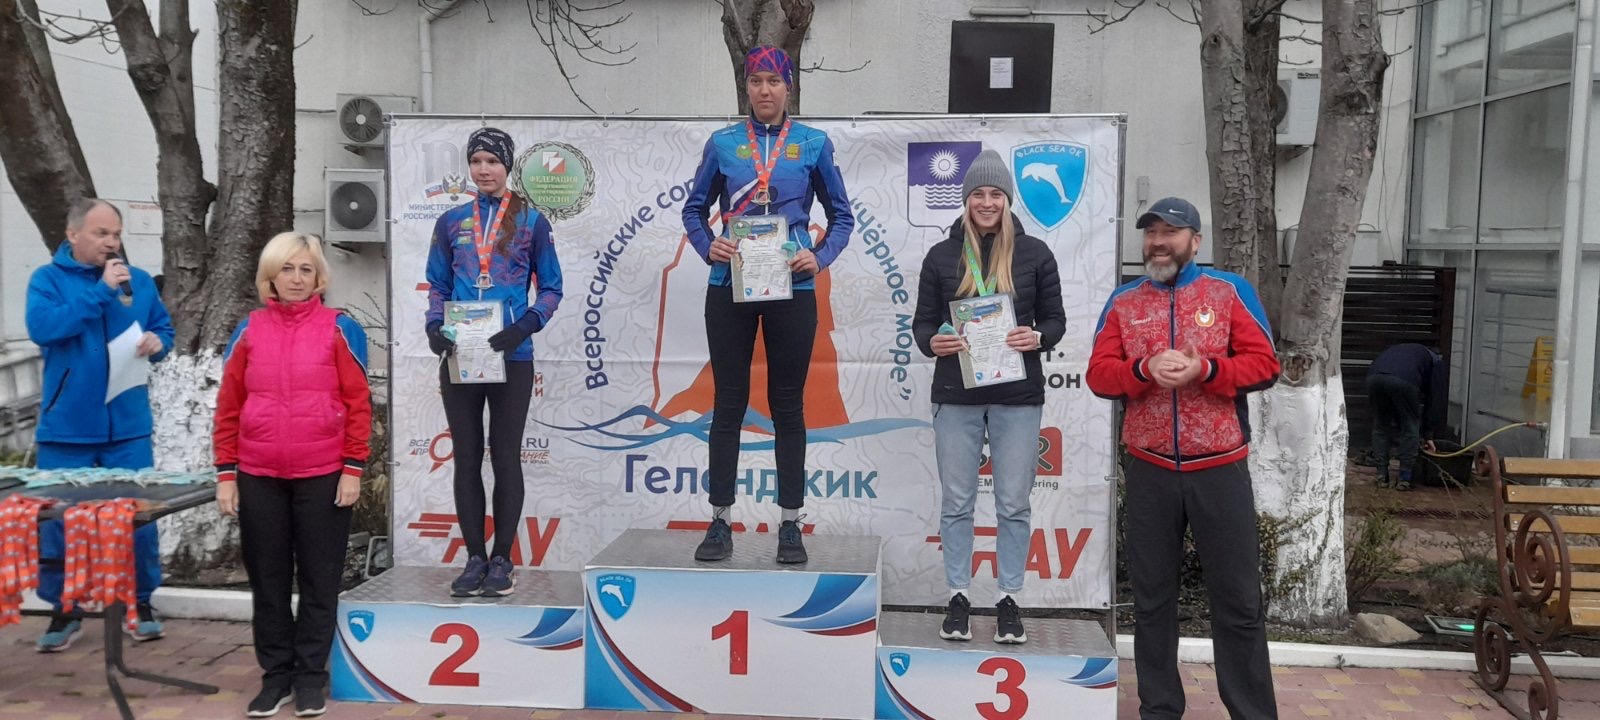 20-летняя ориентировщица из Пензы взяла золото на Всероссийских соревнованиях в Геленджике 